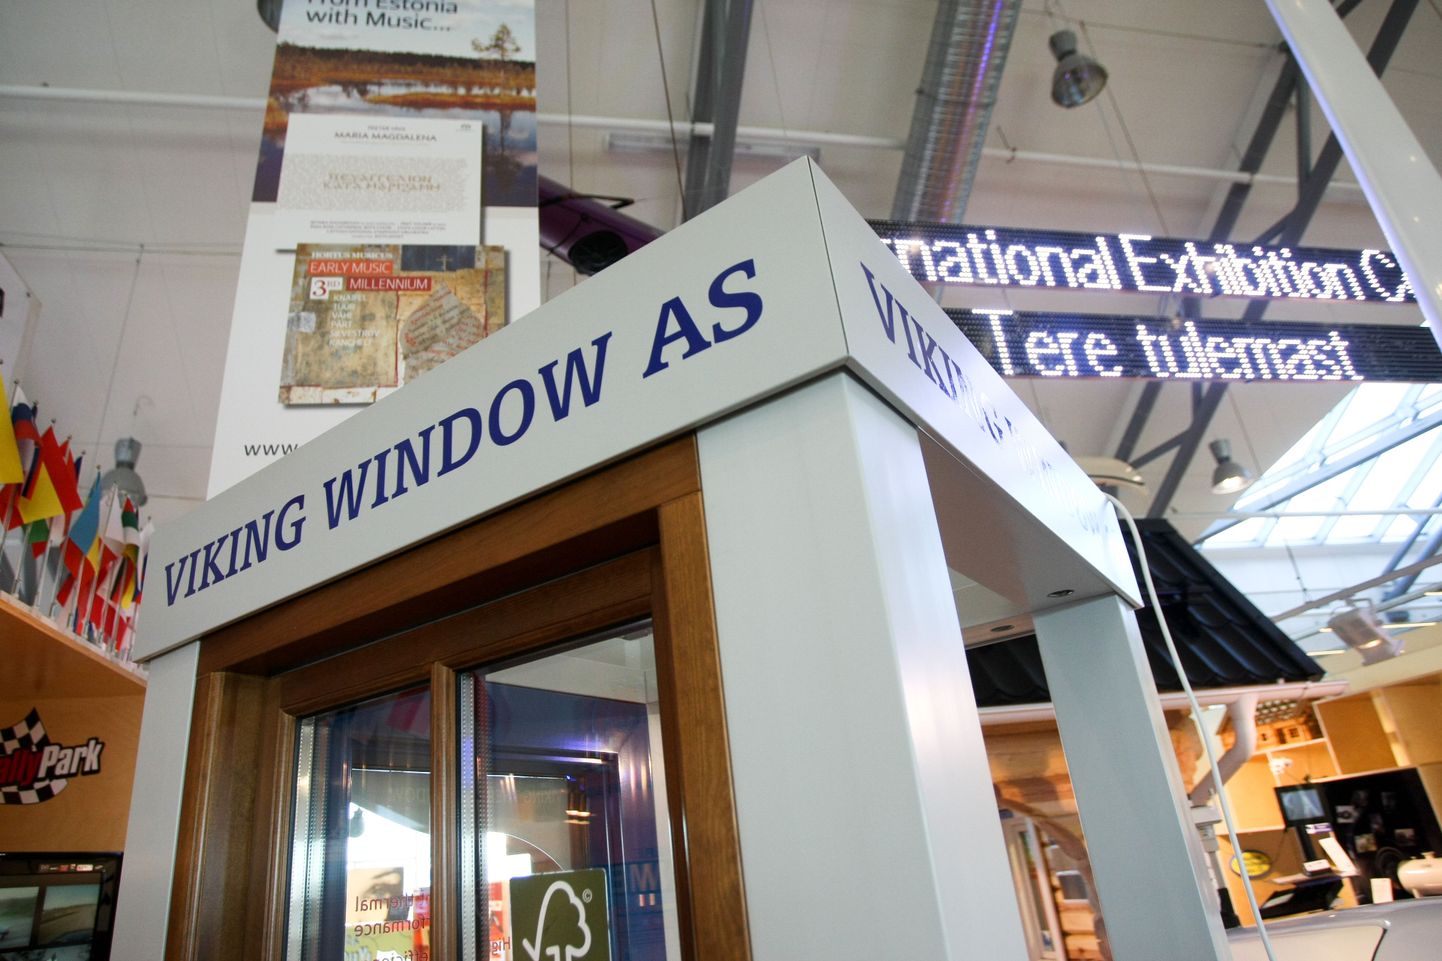 Tallinna lennujaamas tutvustab oma toodangut Konesko ja Viking Window.
DMITRI KOTJUH, JÄRVA TEATAJA/SCANPIX